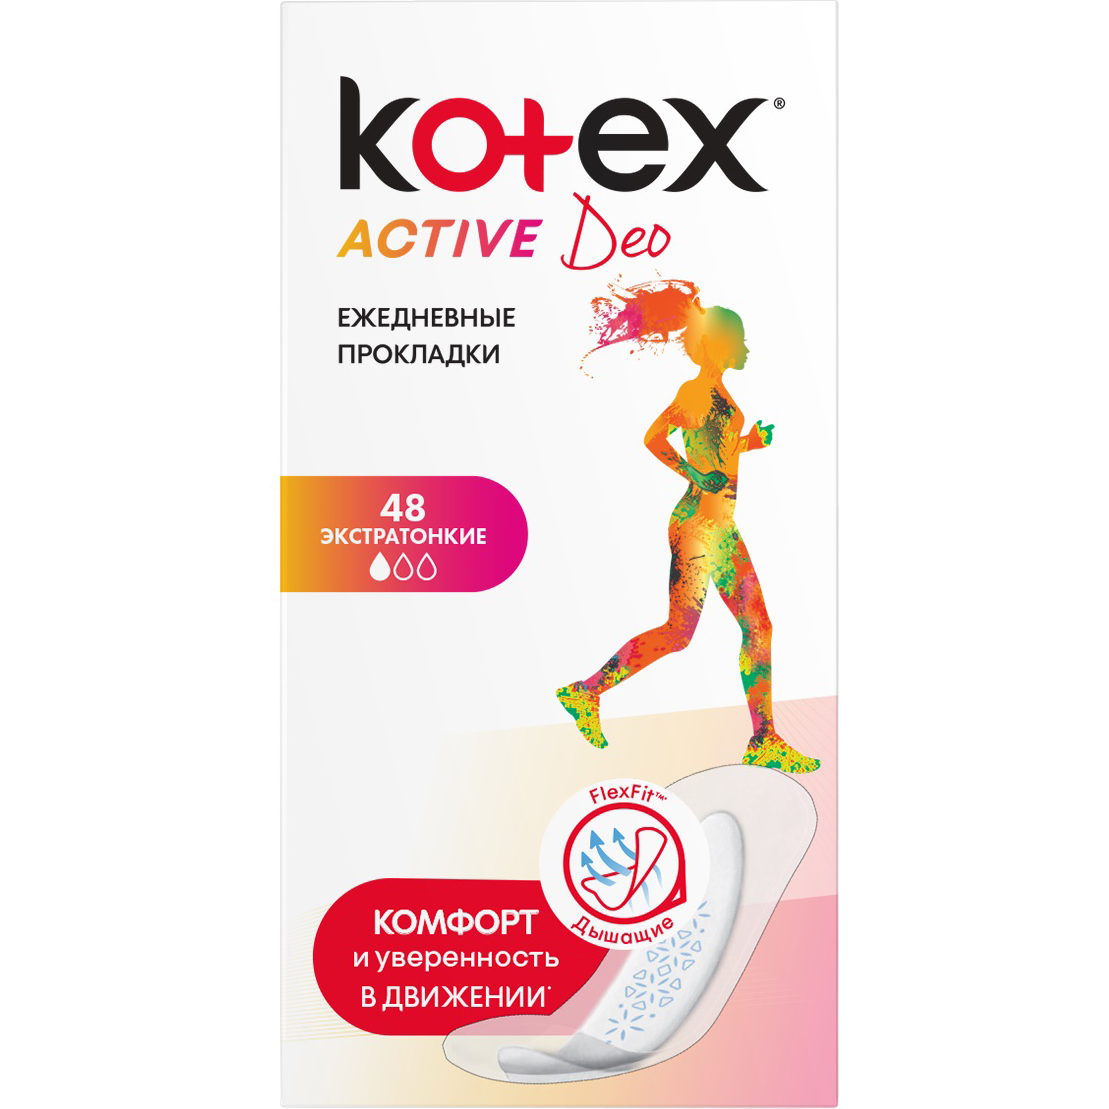 Прокладки Kotex Active Deo Экстратонкие 48 шт прокладки ежедневные kotex антибактериальные 20 шт